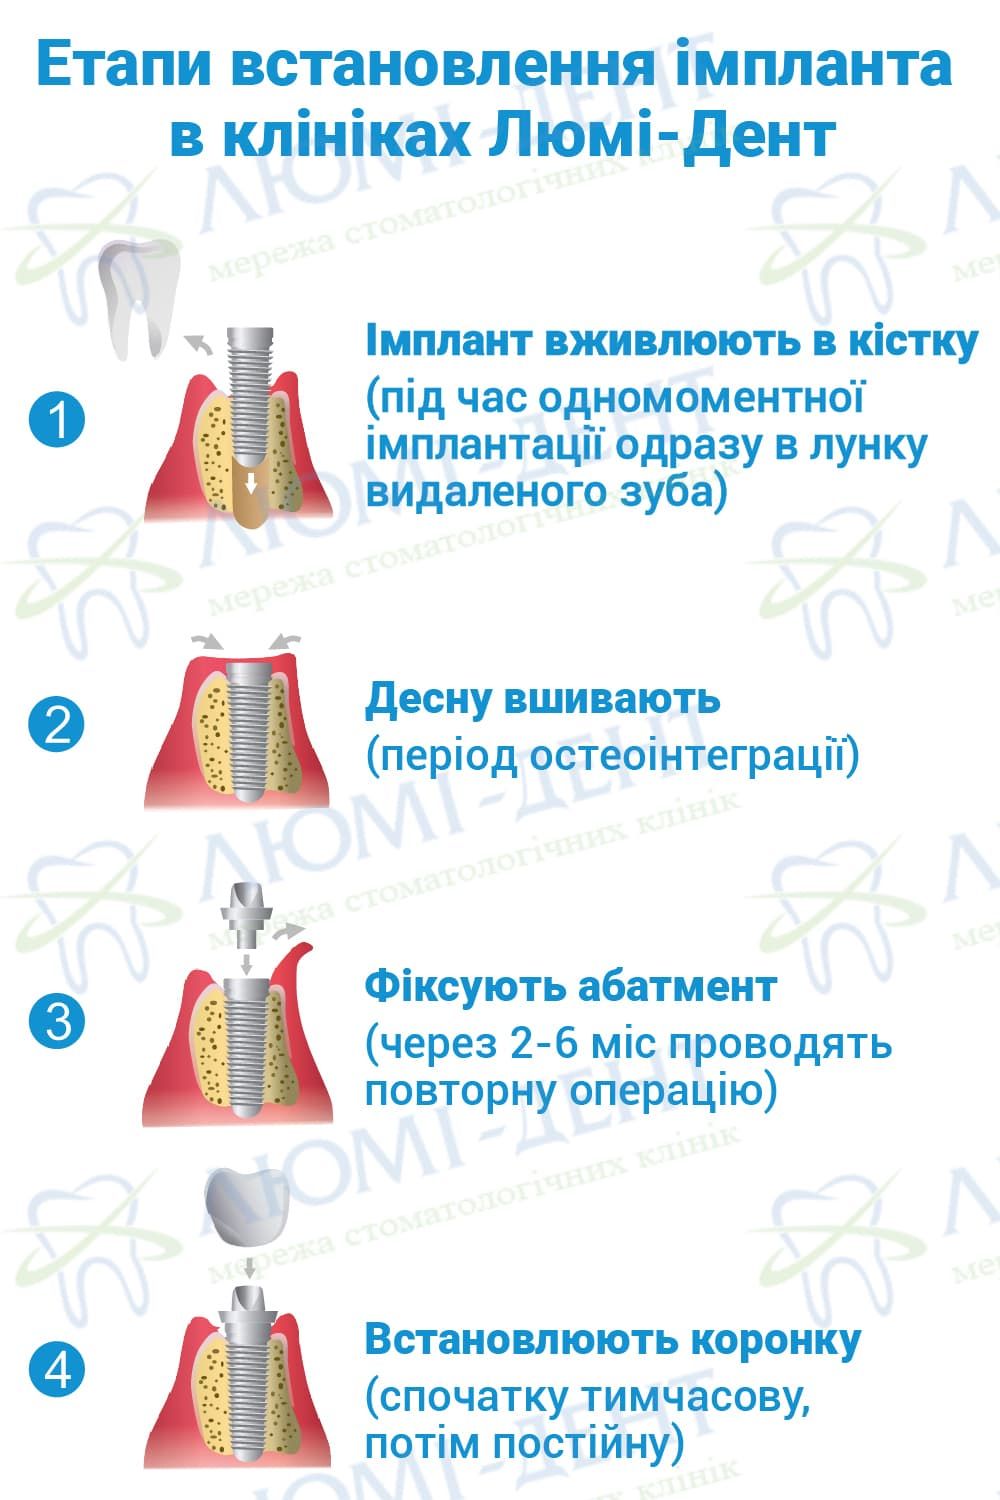 Етапи встановлення імпланта